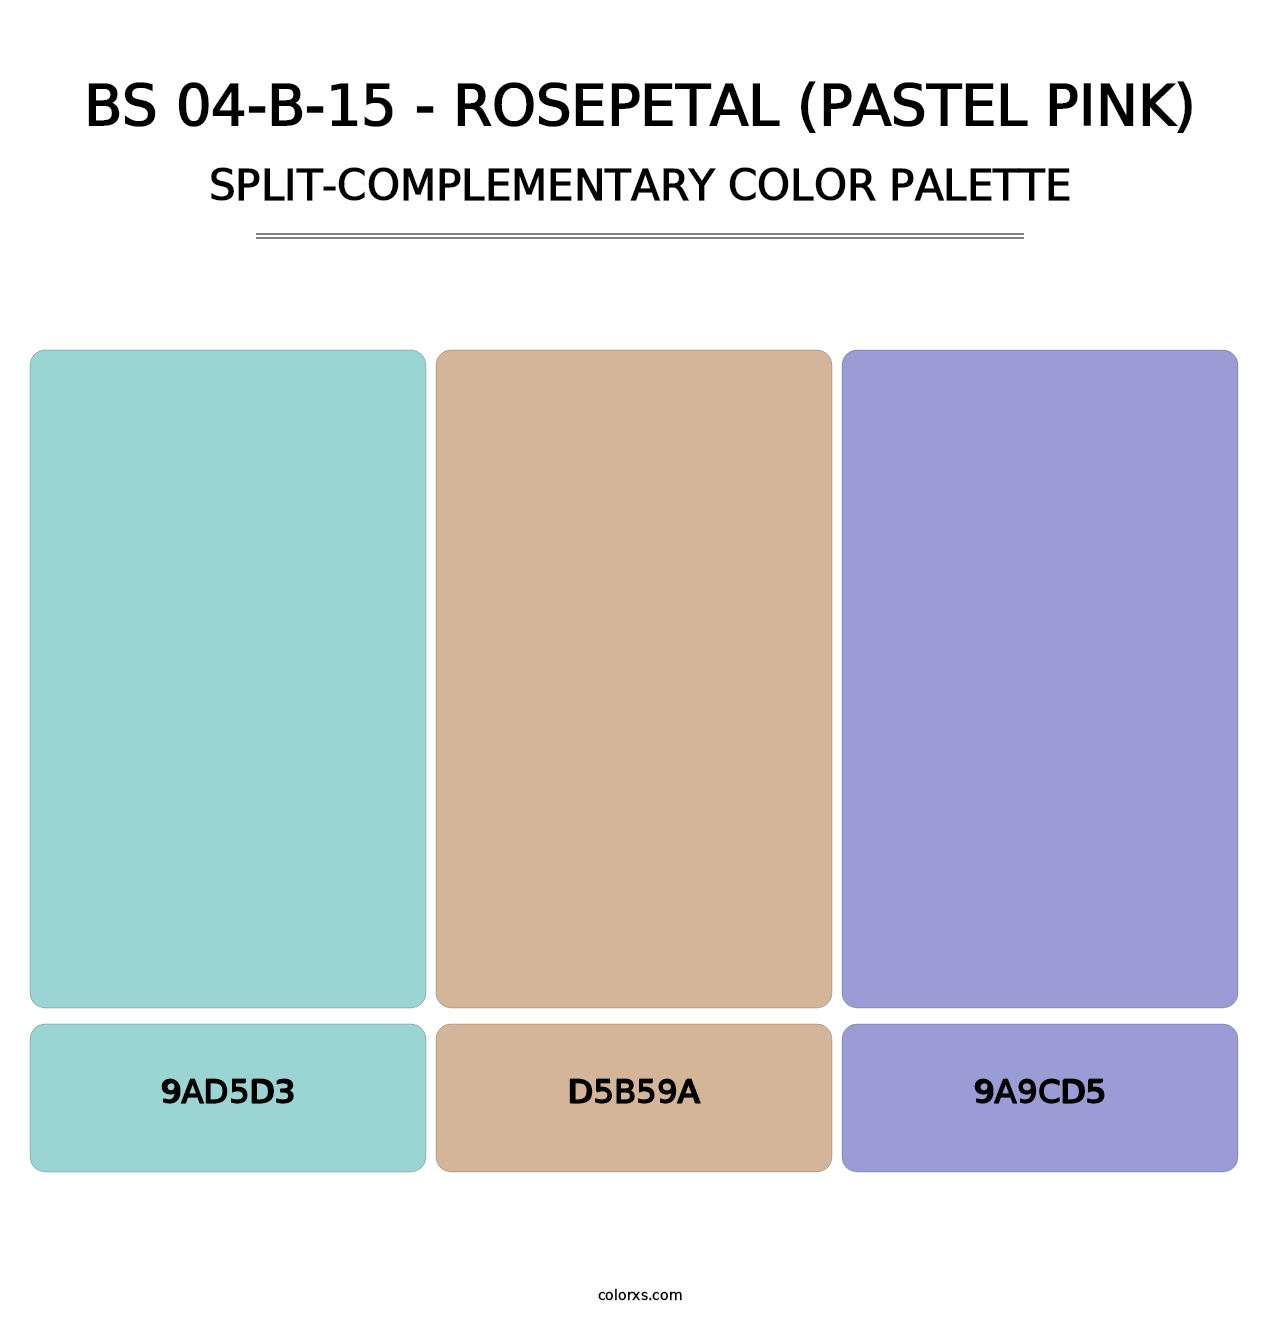 BS 04-B-15 - Rosepetal (Pastel Pink) - Split-Complementary Color Palette